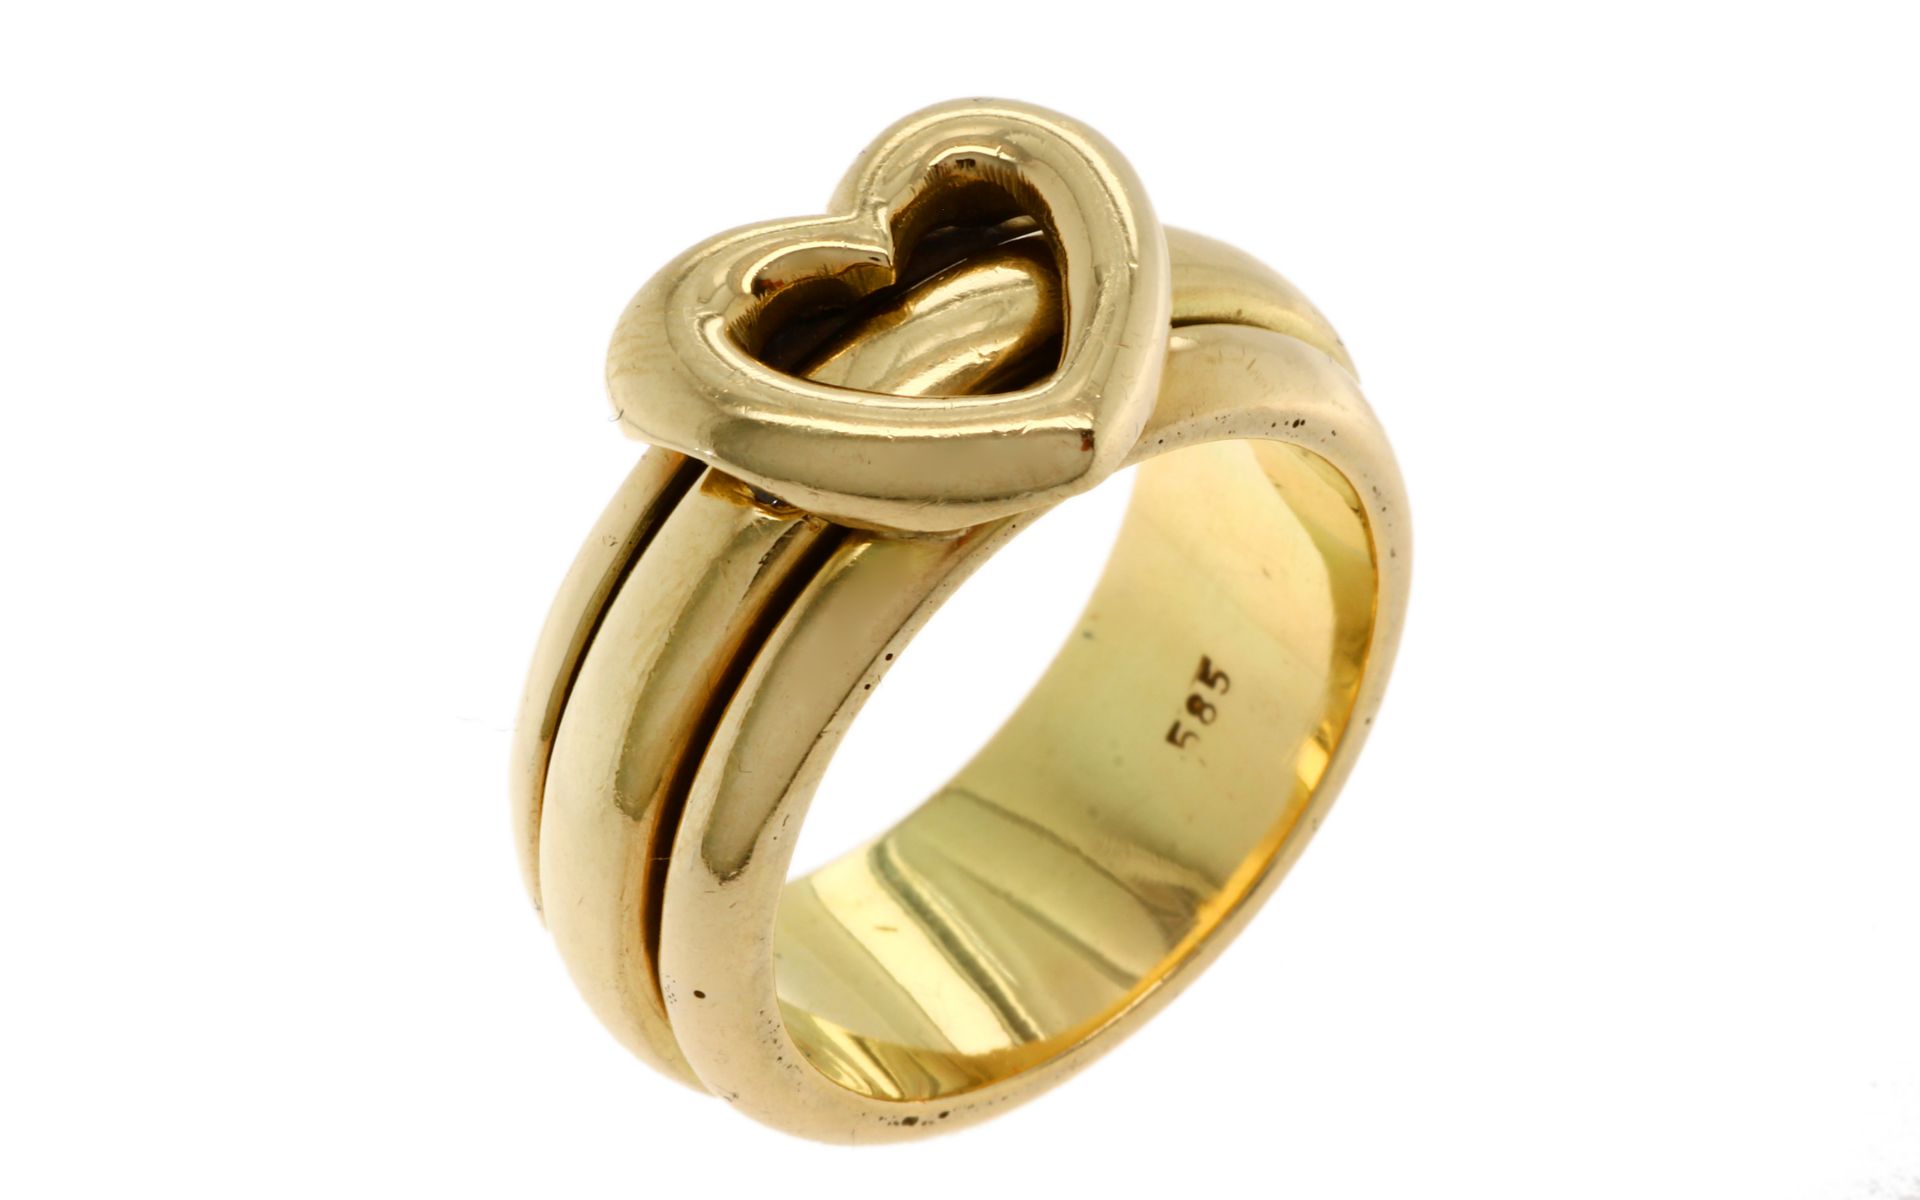 Ring Herz 15.4g 585/- Gelbgold mit Diamant ca. 0.05 ct.. Ringgroesse ca. 55. Mittelring ist drehbar